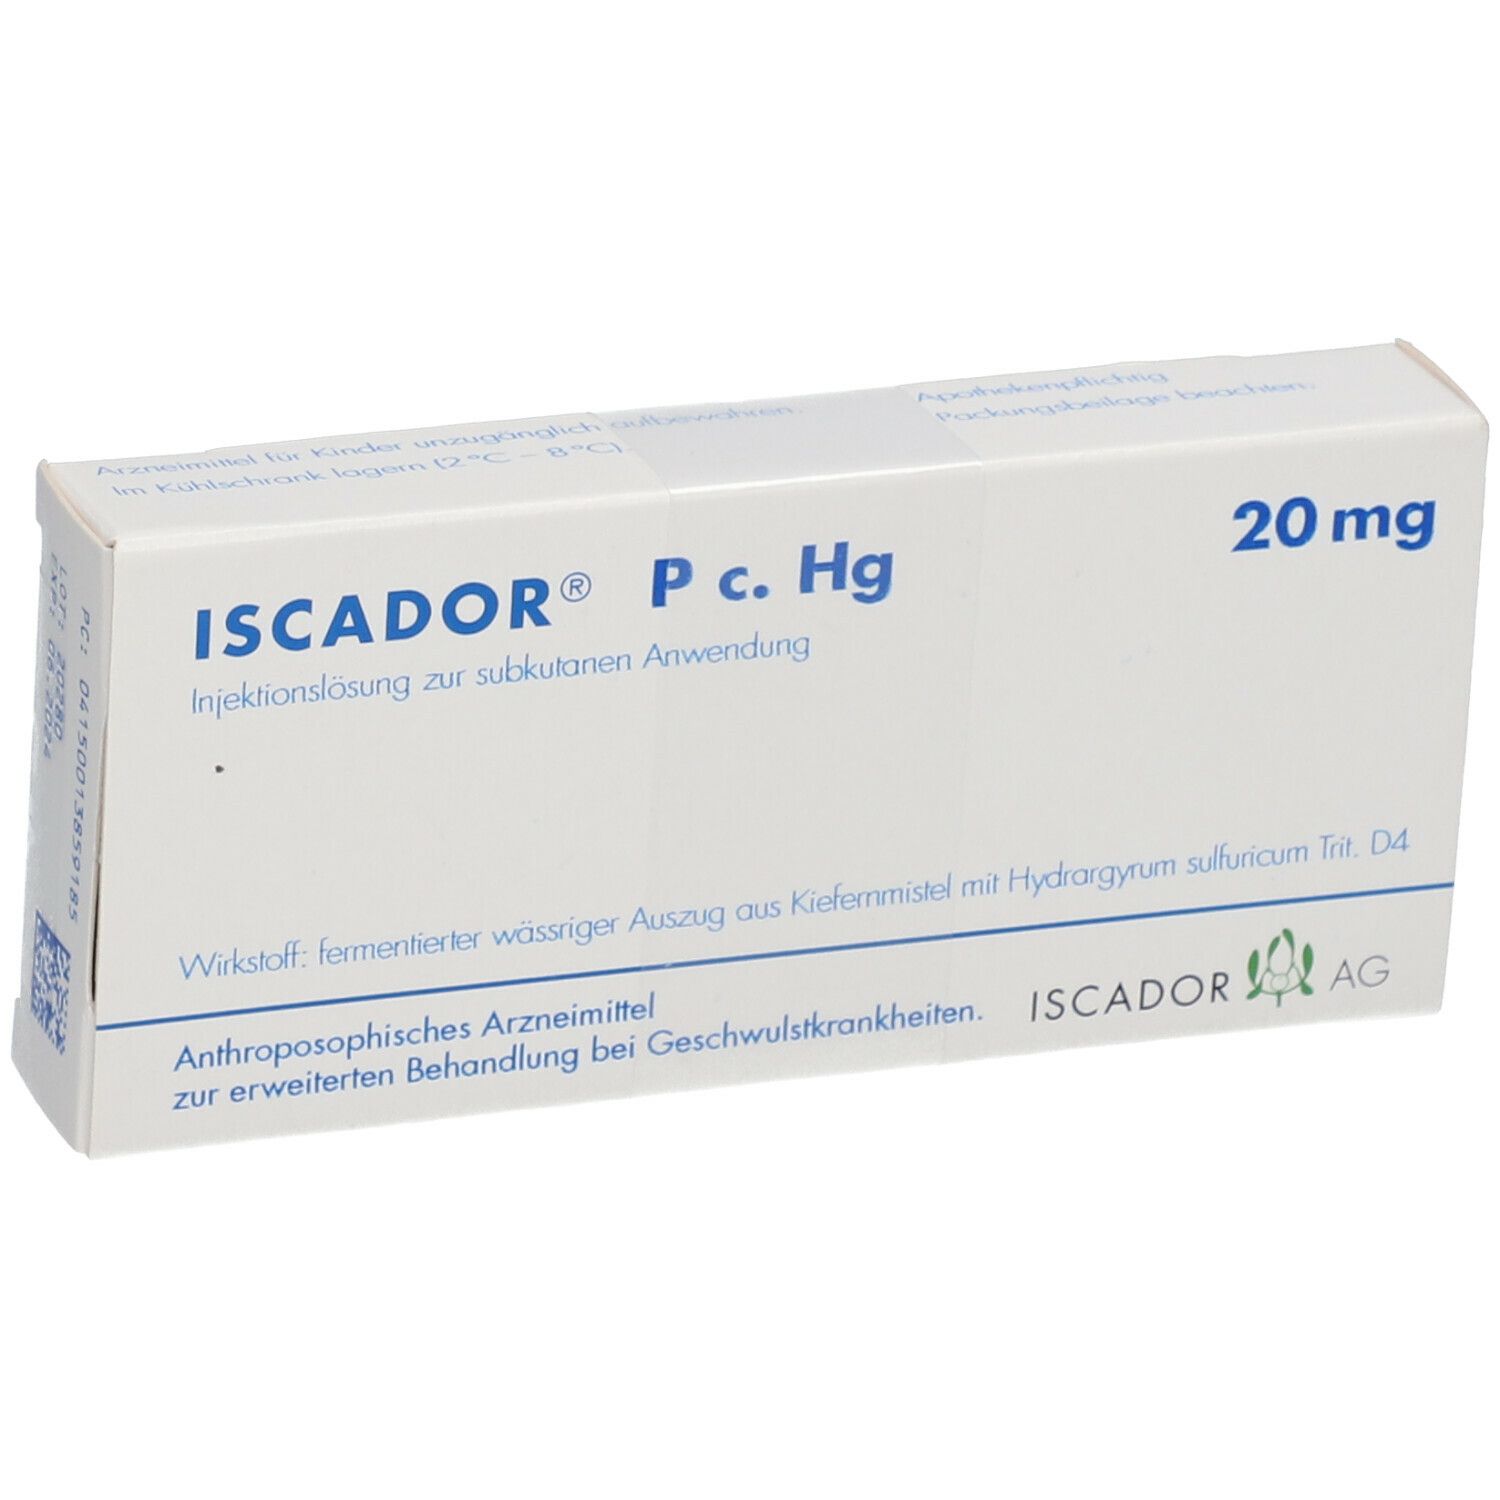 ISCADOR® P c. Hg 20 mg